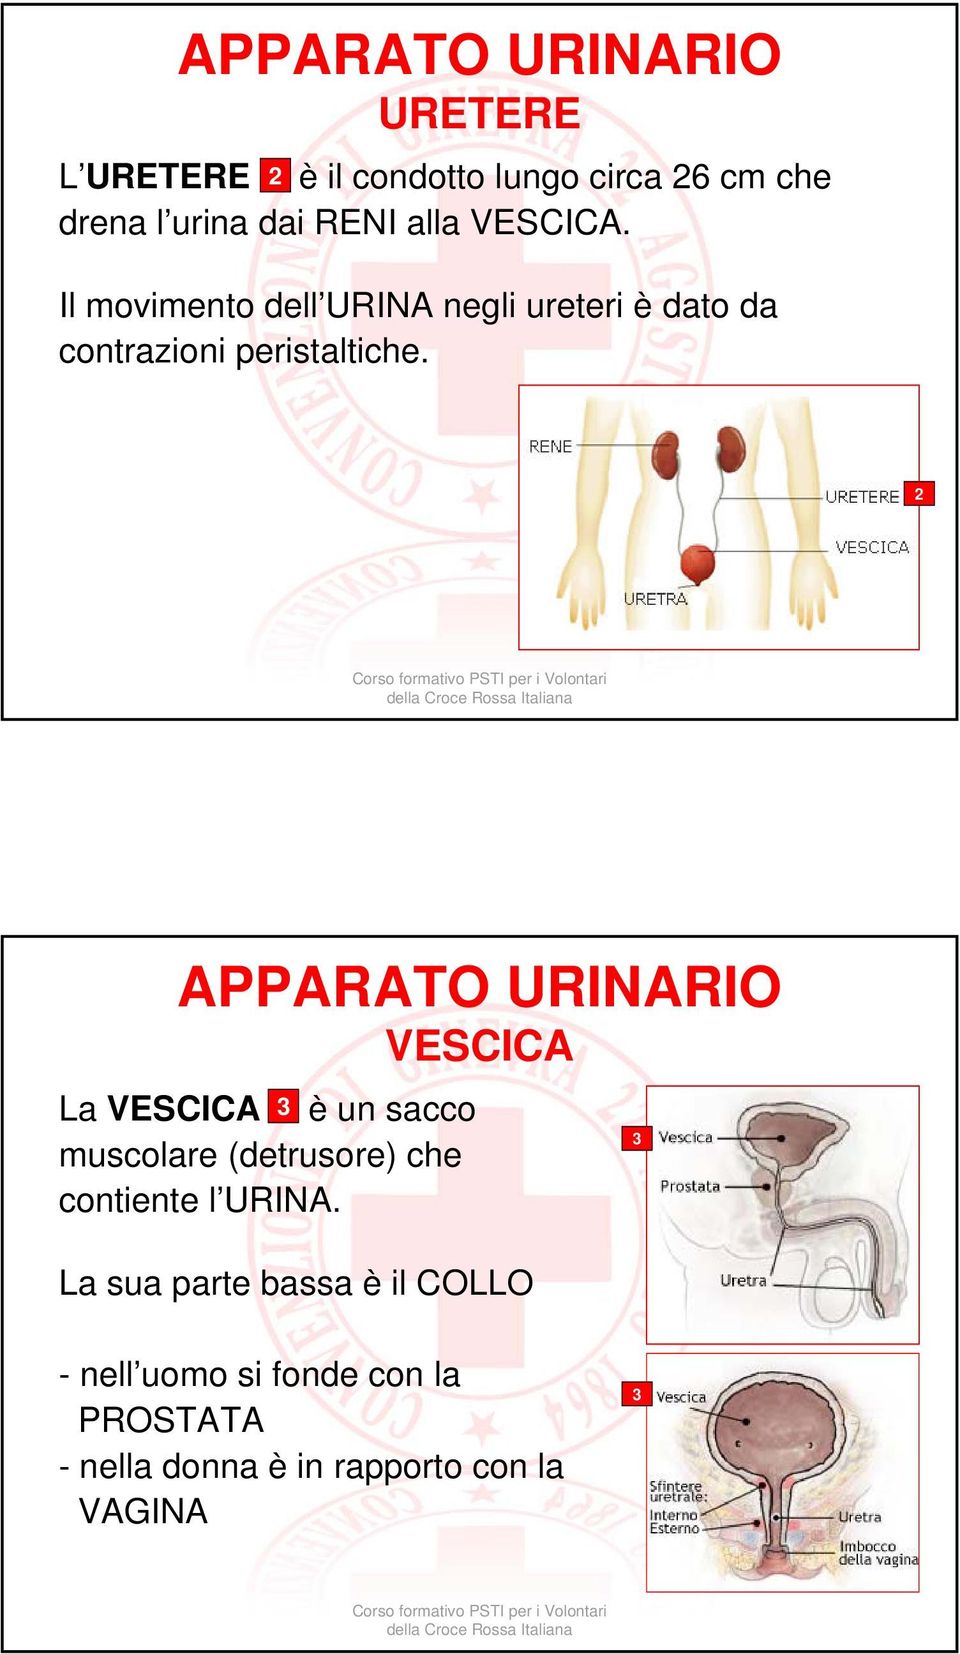 2 APPARATO URINARIO VESCICA La VESCICA 3 è un sacco muscolare (detrusore) che contiente l URINA.